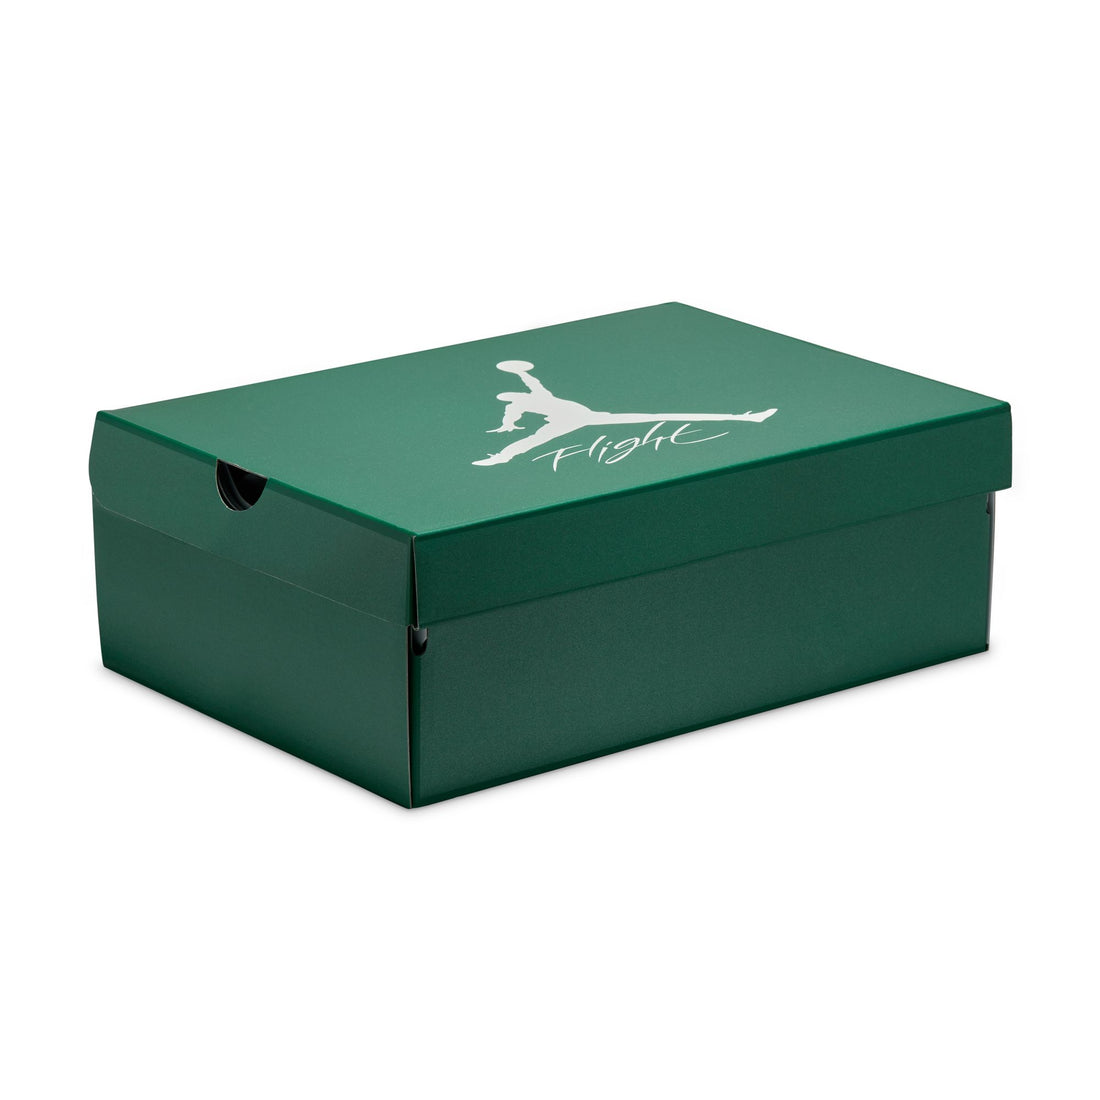 Air Jordan 4 Retro (White/Oxidized Green/White)